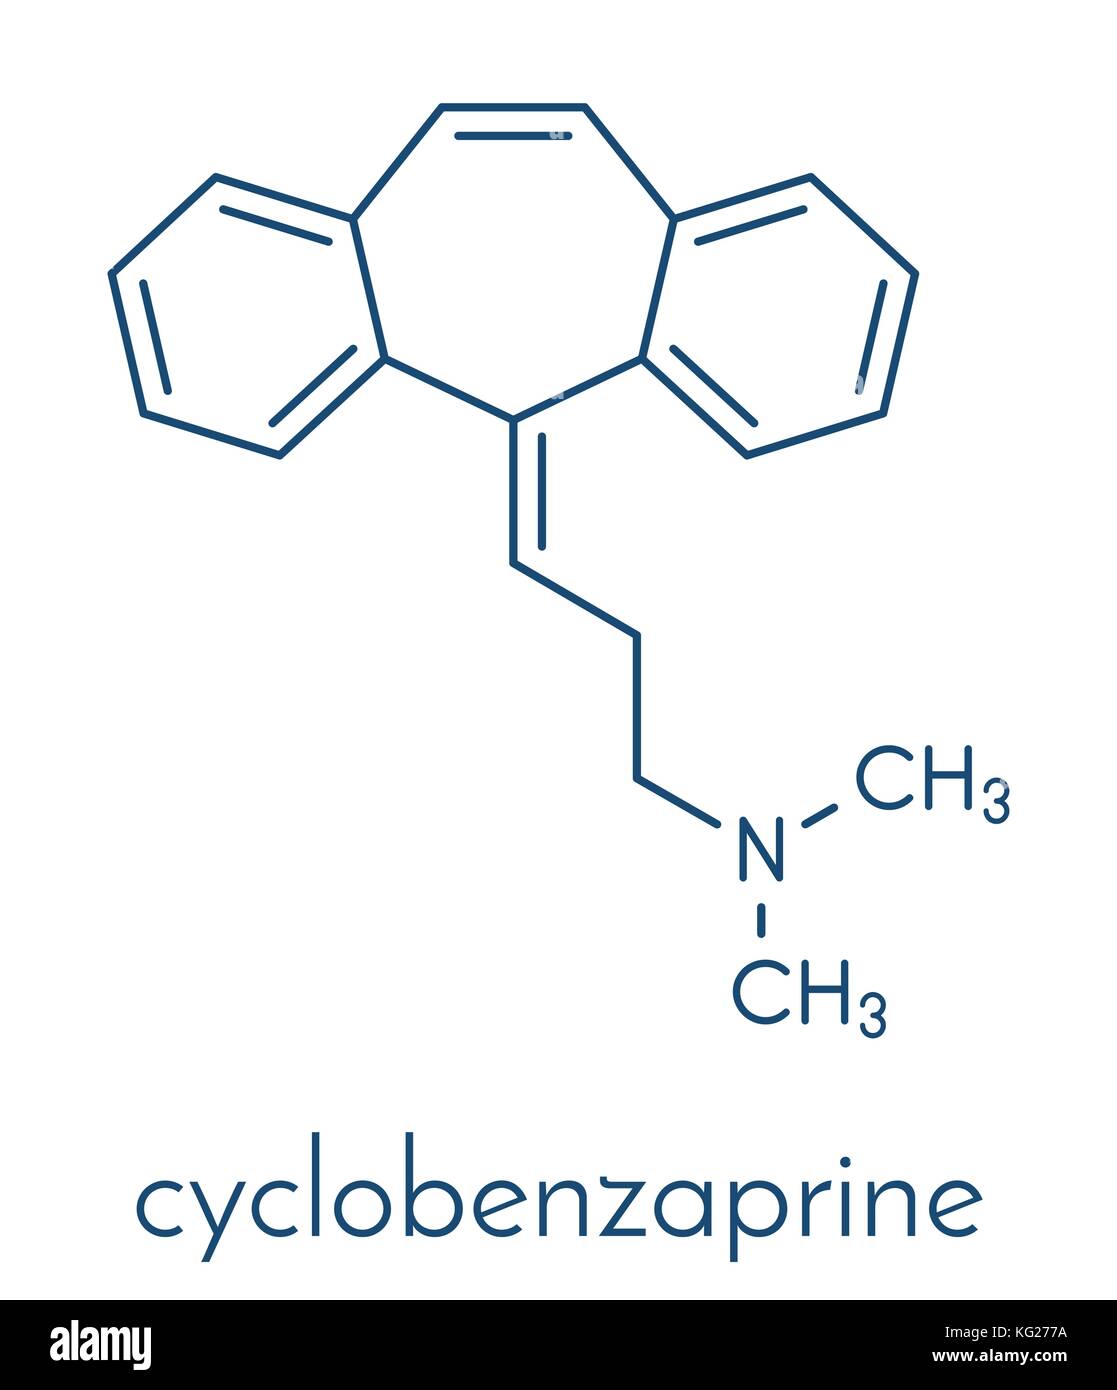 Cyclobenzaprine muscle spasm drug molecule. Skeletal formula. Stock Vector